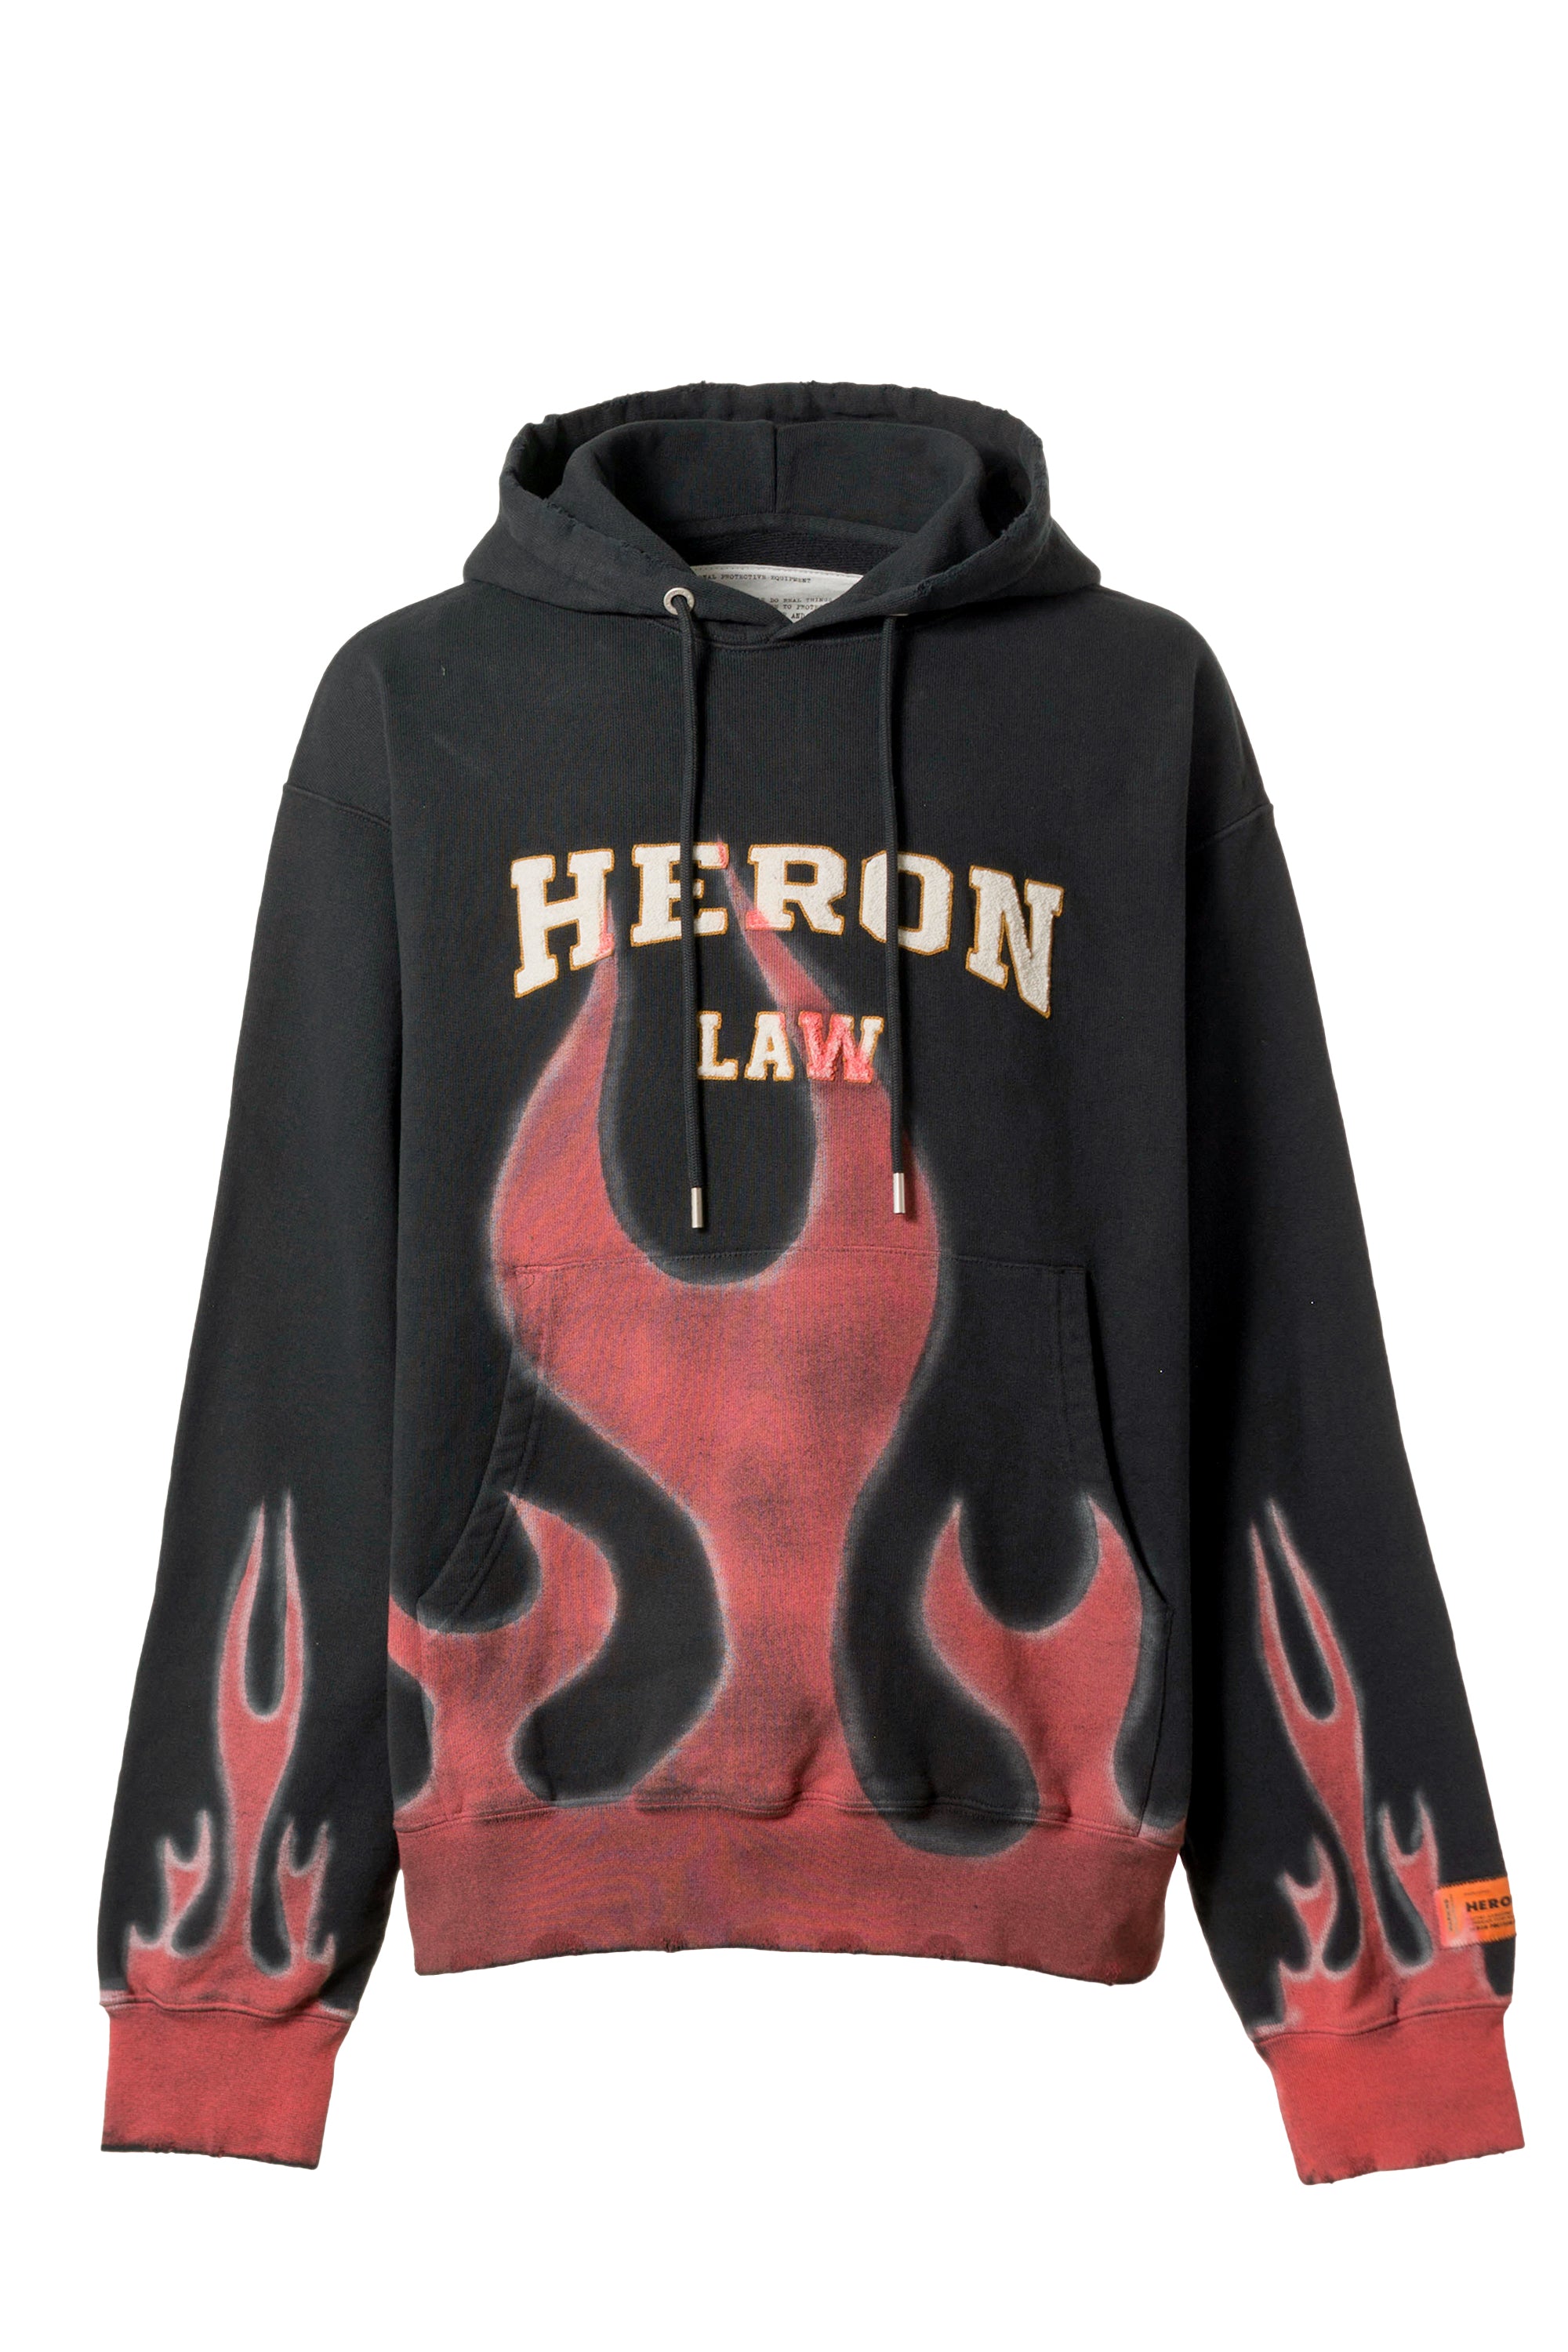 Heron Preston SS23 HERON LAW FLAMES HOODIE / BLK RED